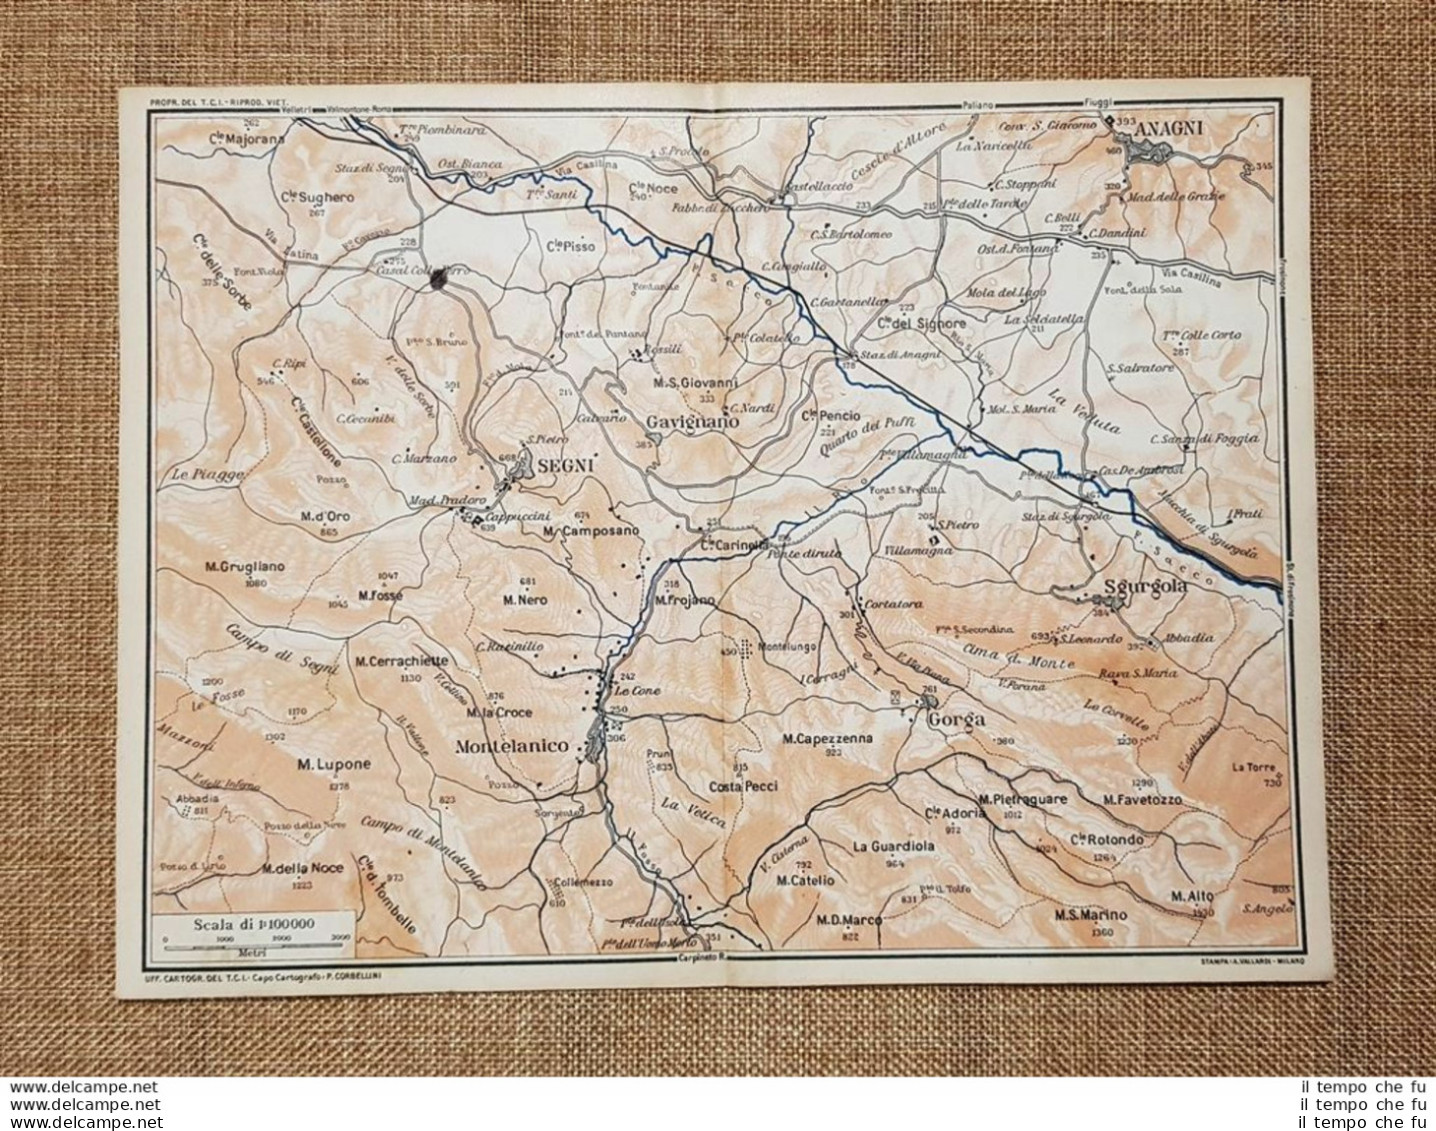 Carta O Cartina Del 1924 Anagni Gavignano Segni Montelanico Gorga Lazio T.C.I. - Landkarten